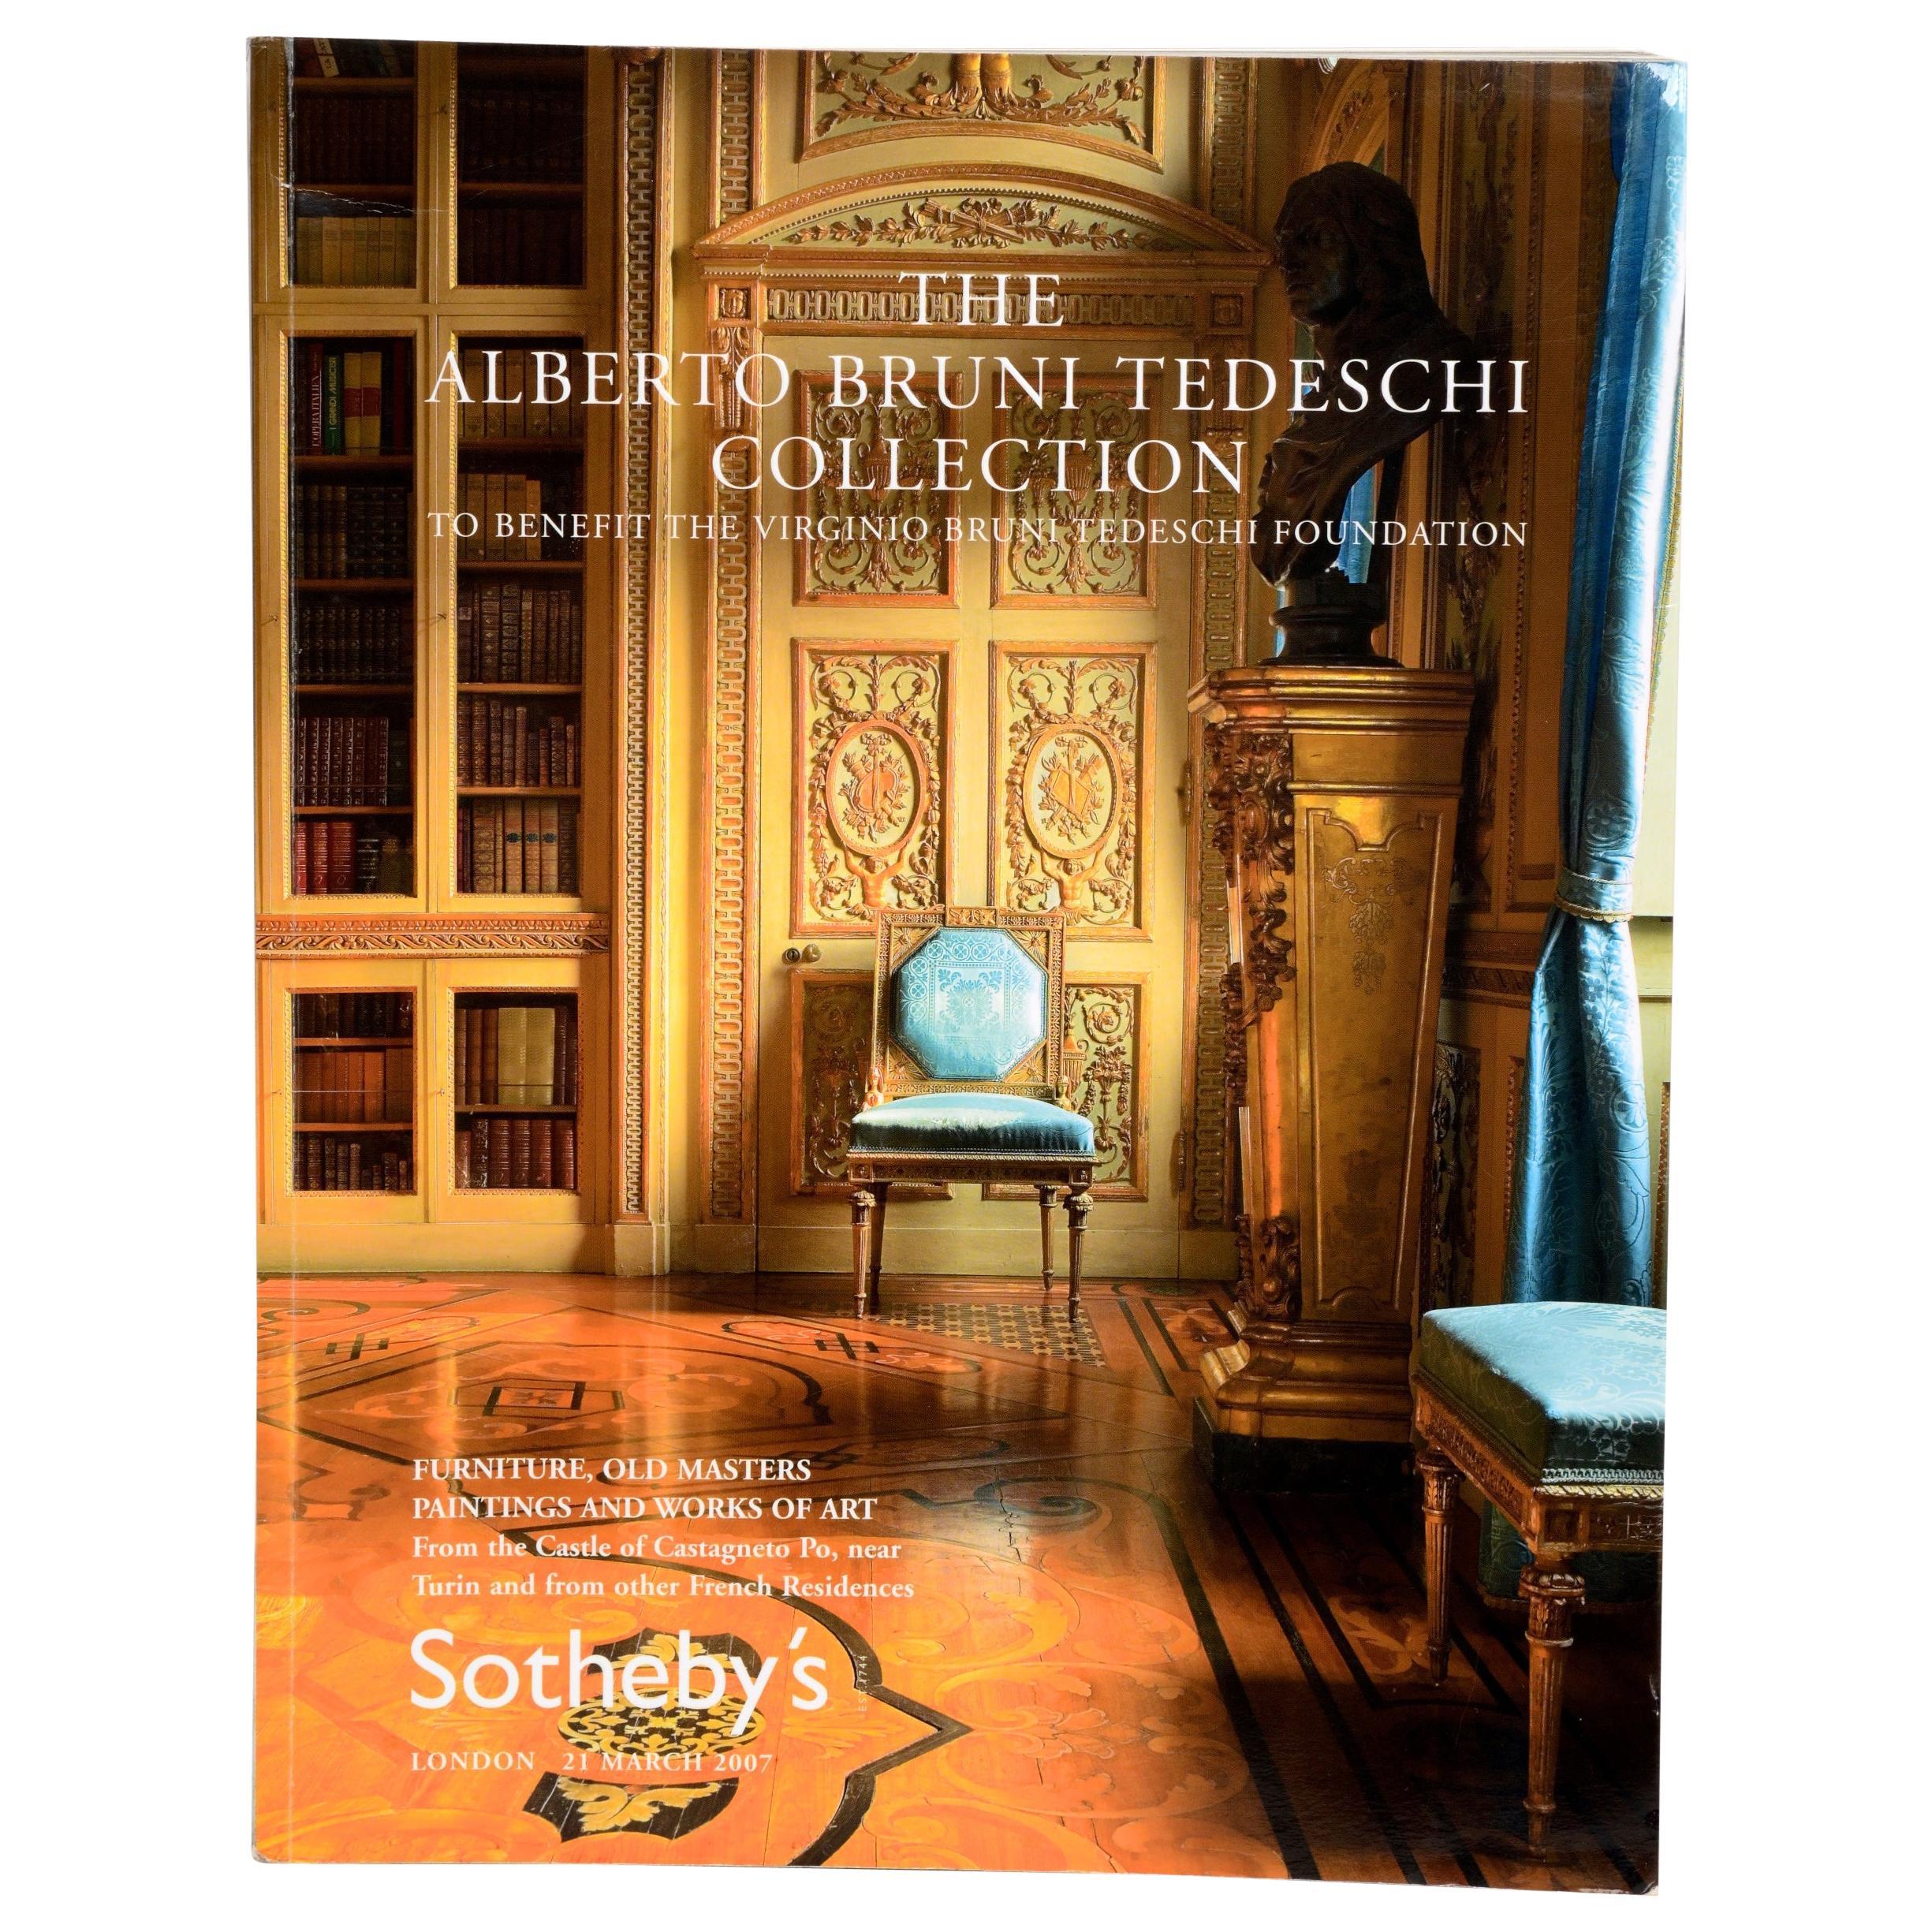 Sothebys 2007 The Alberto Bruni Tedeschi Collection